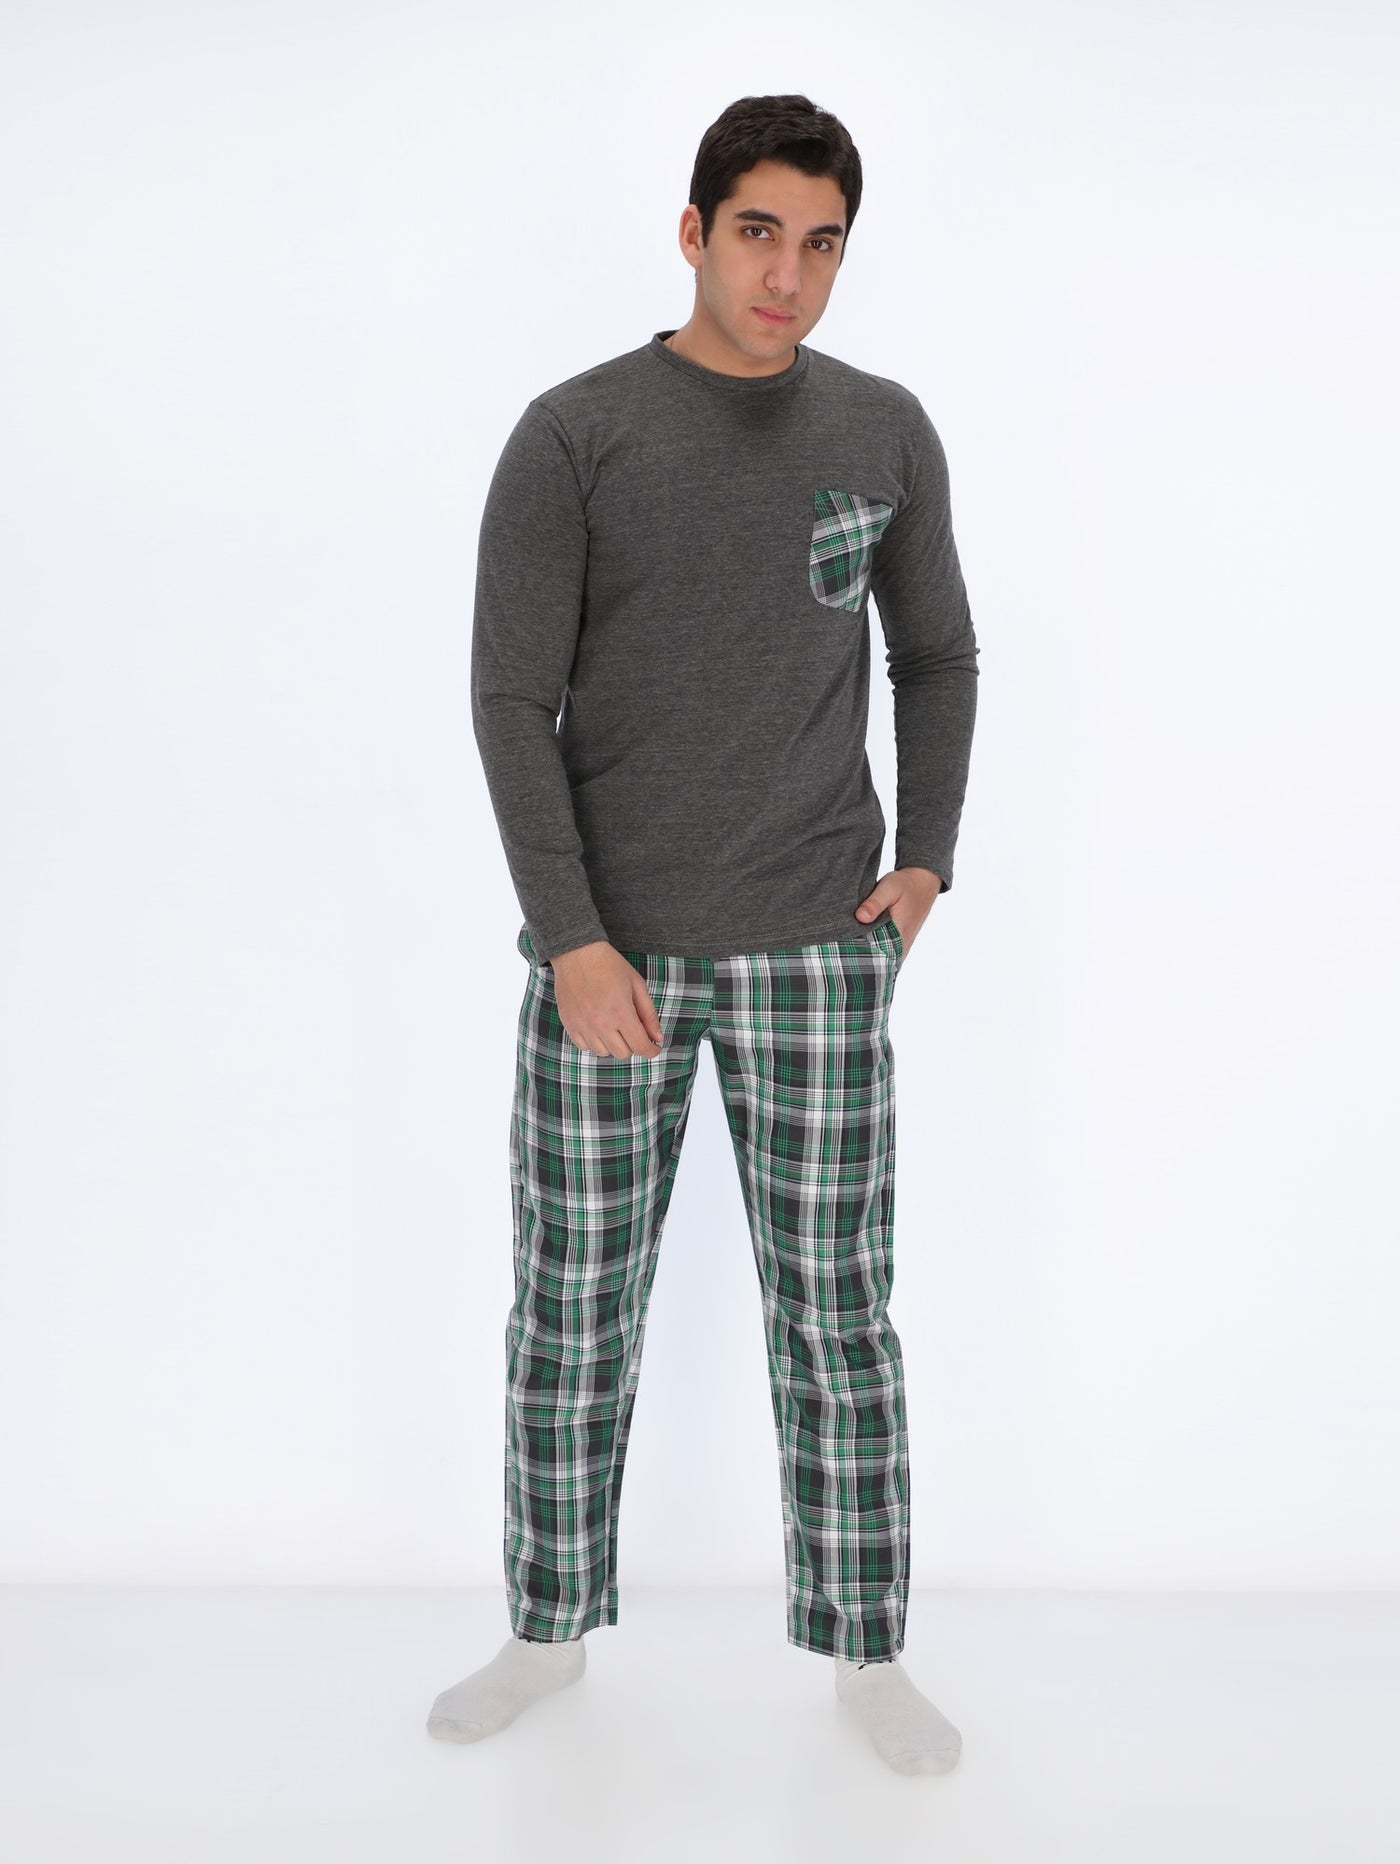 Plaid Pants Pyjama Set